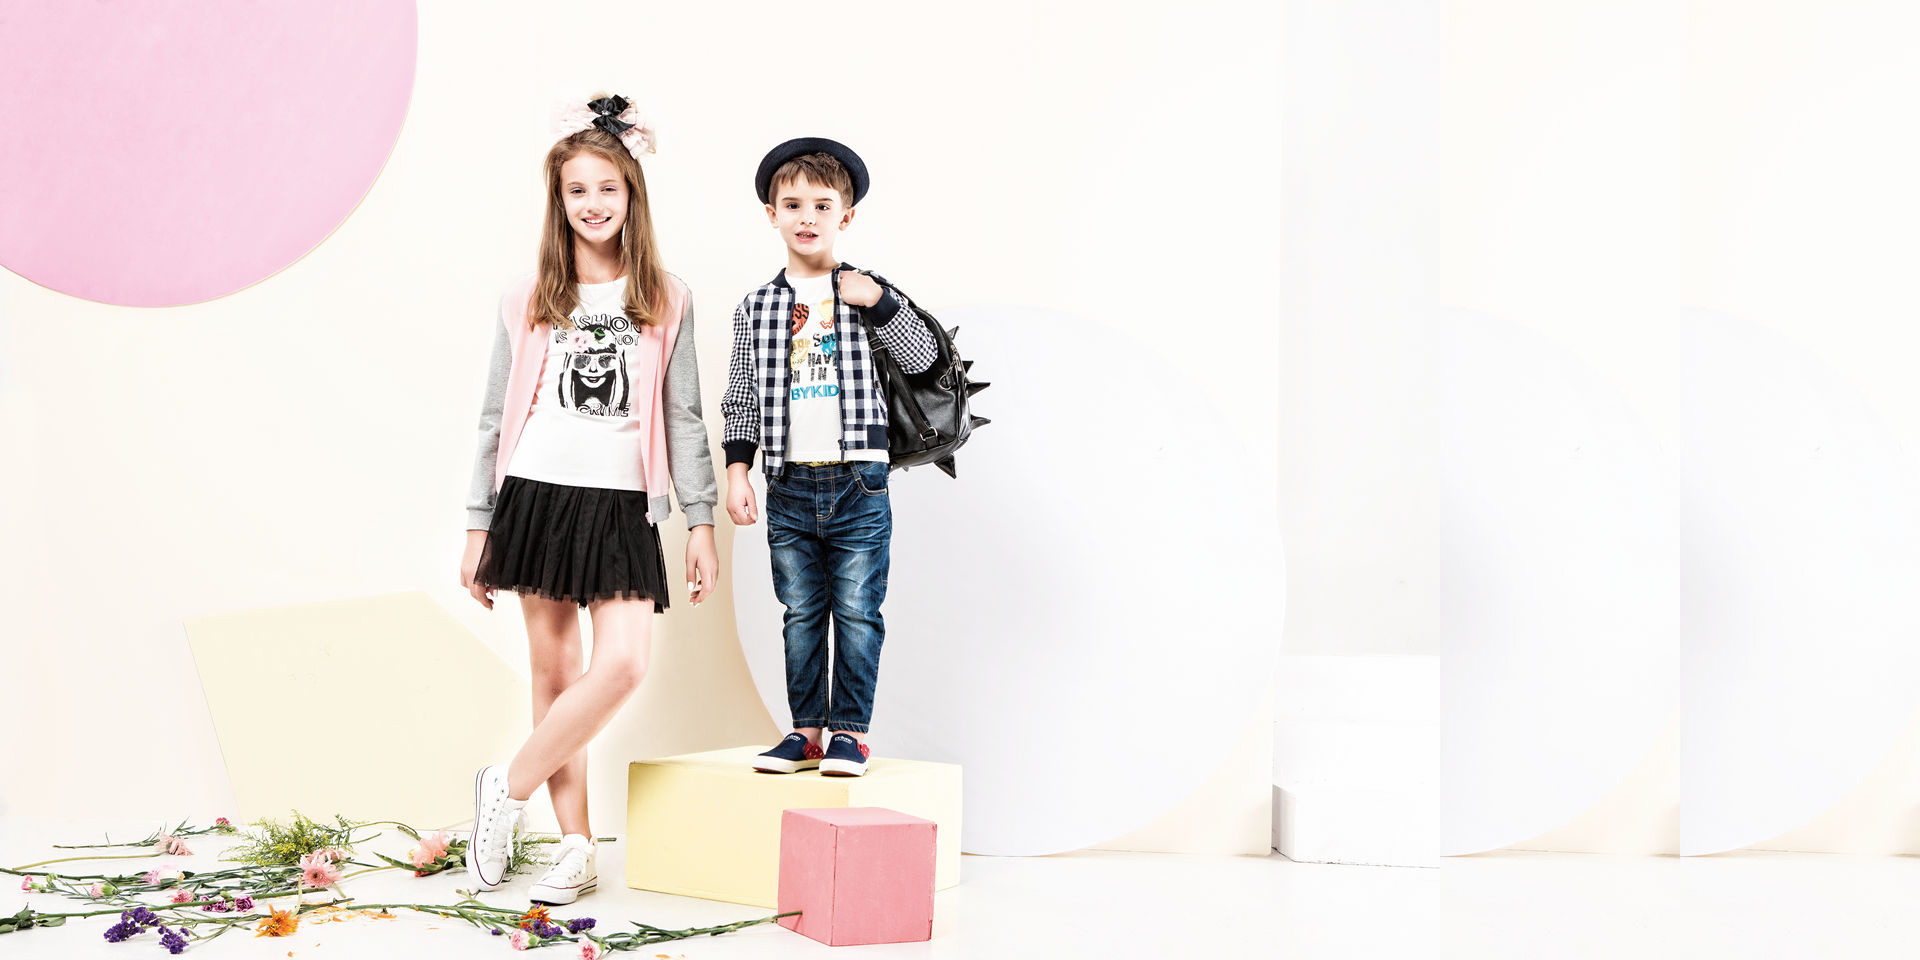 童装作为未来服装行业的蓝海,其市场容量正不断扩大, 2014年公司再次